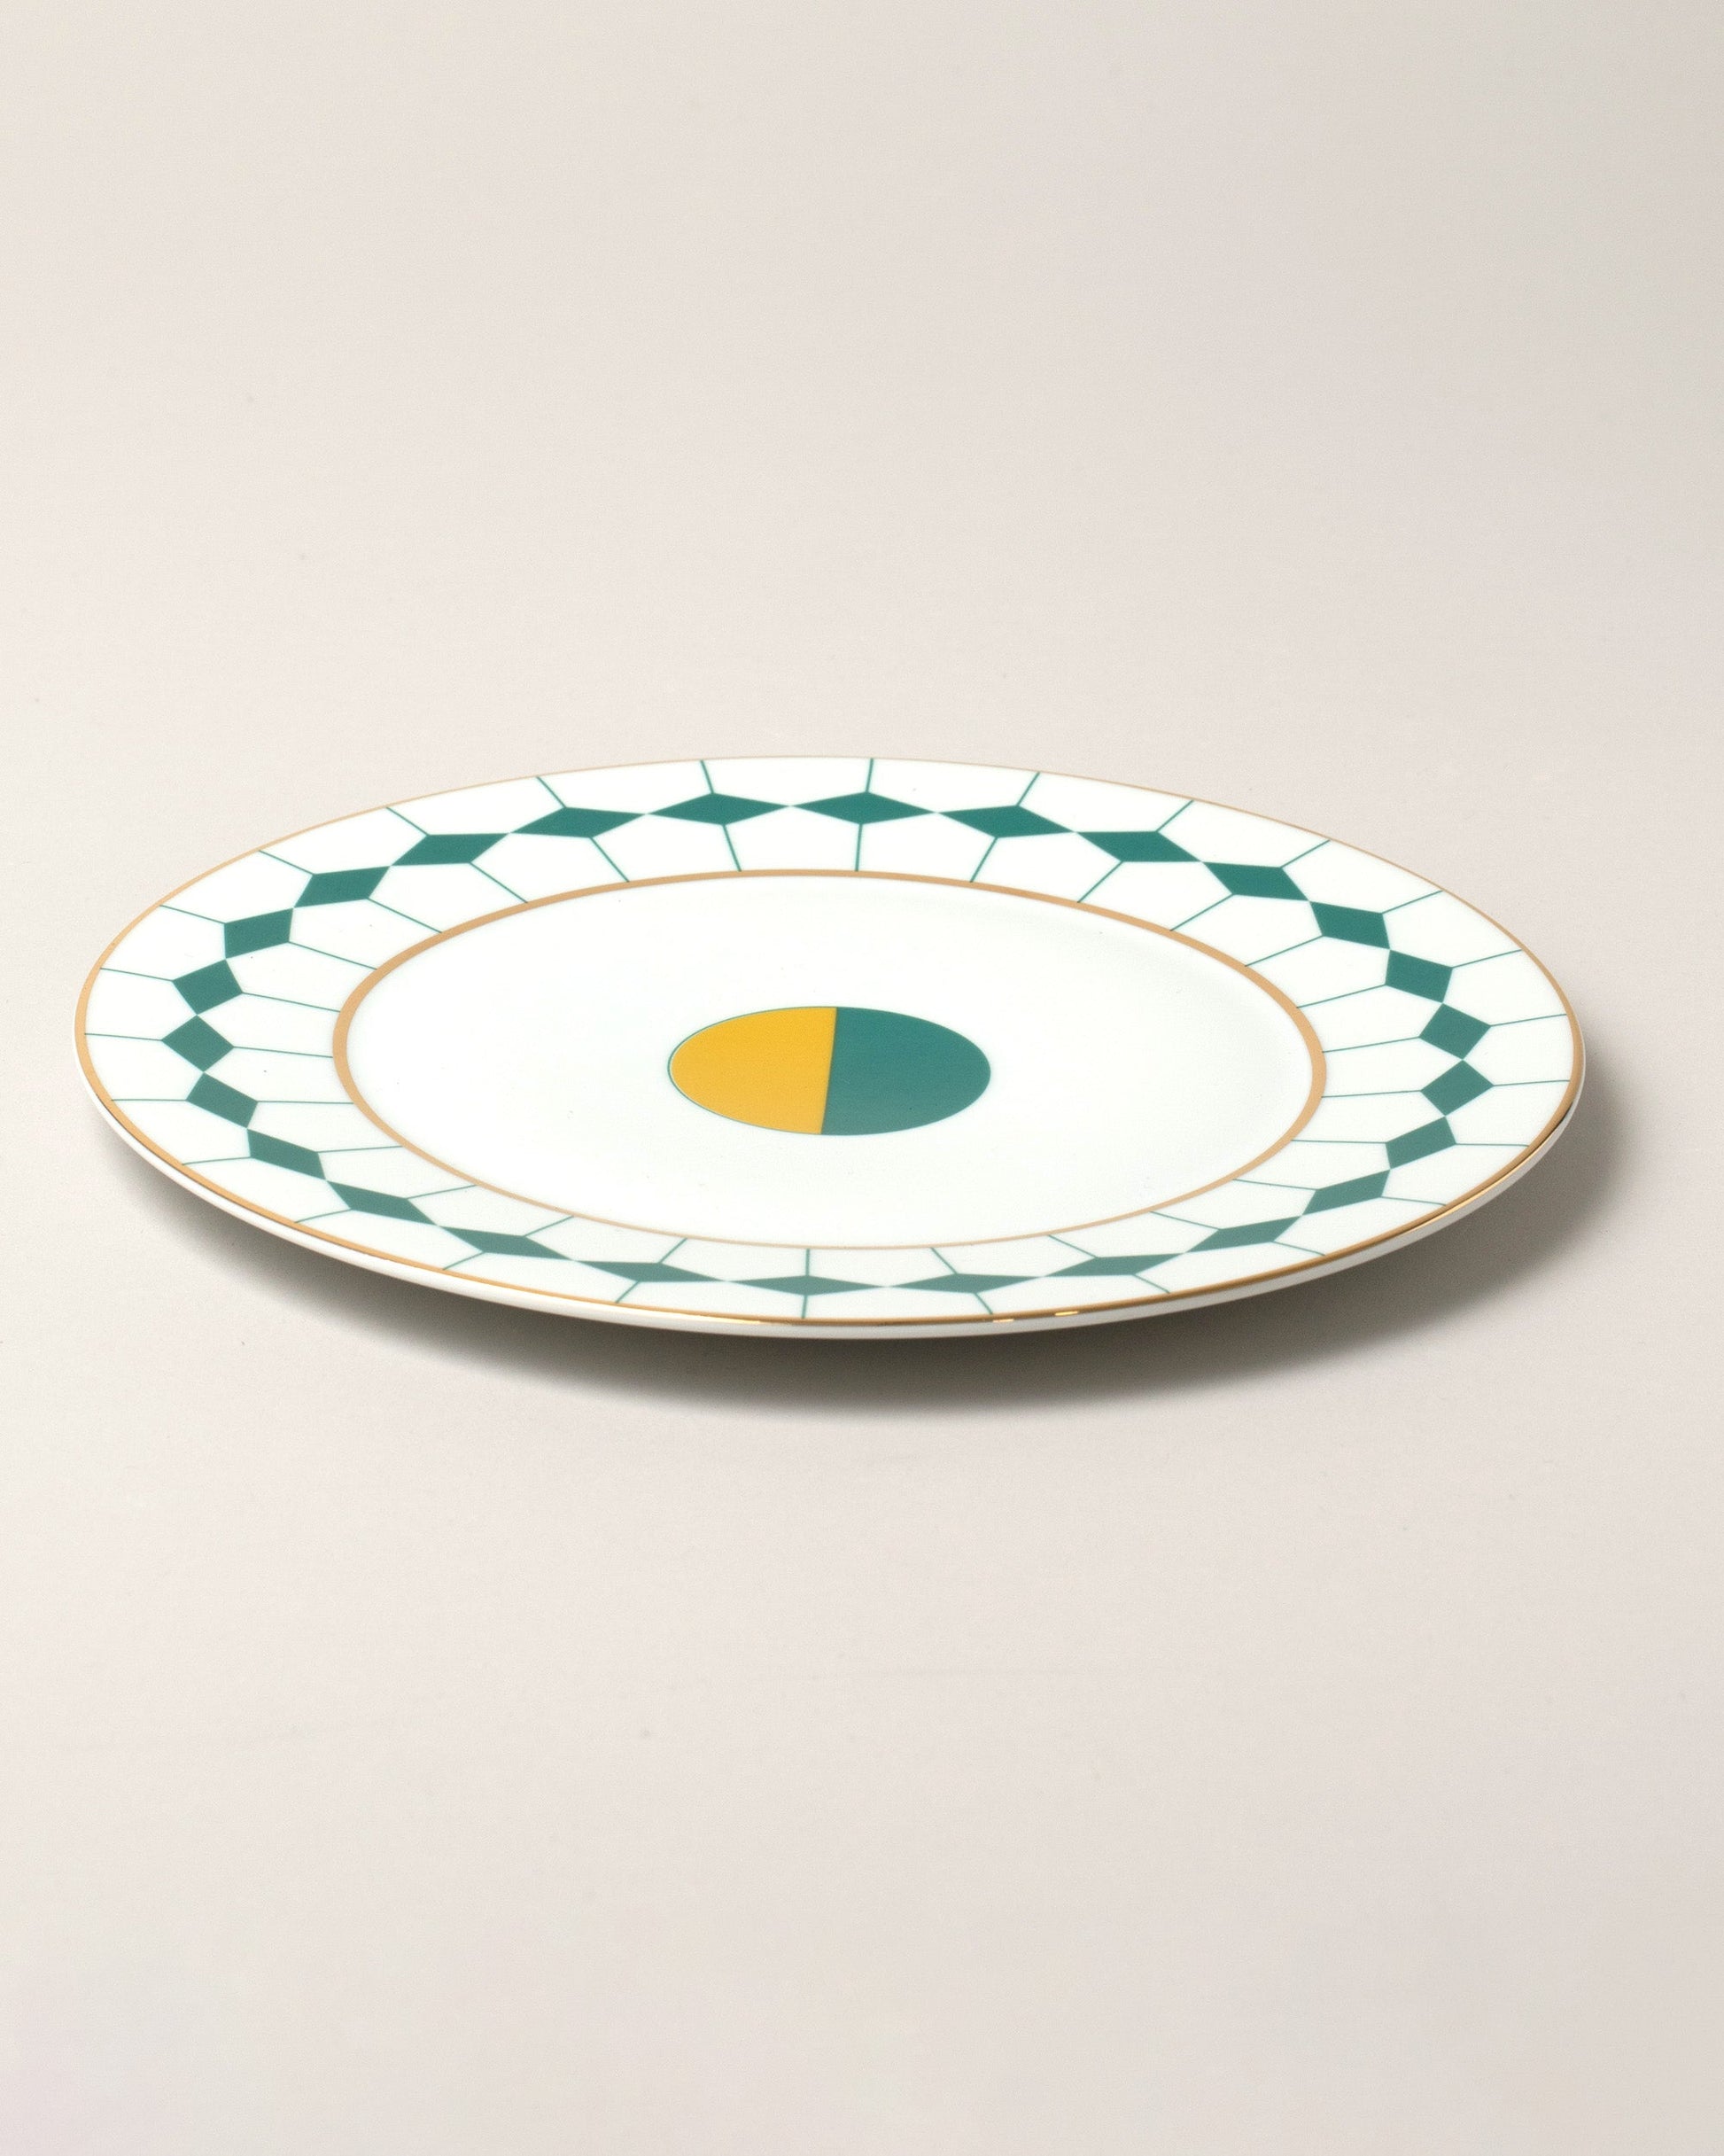  Ponta Dessert Plates on light color background.